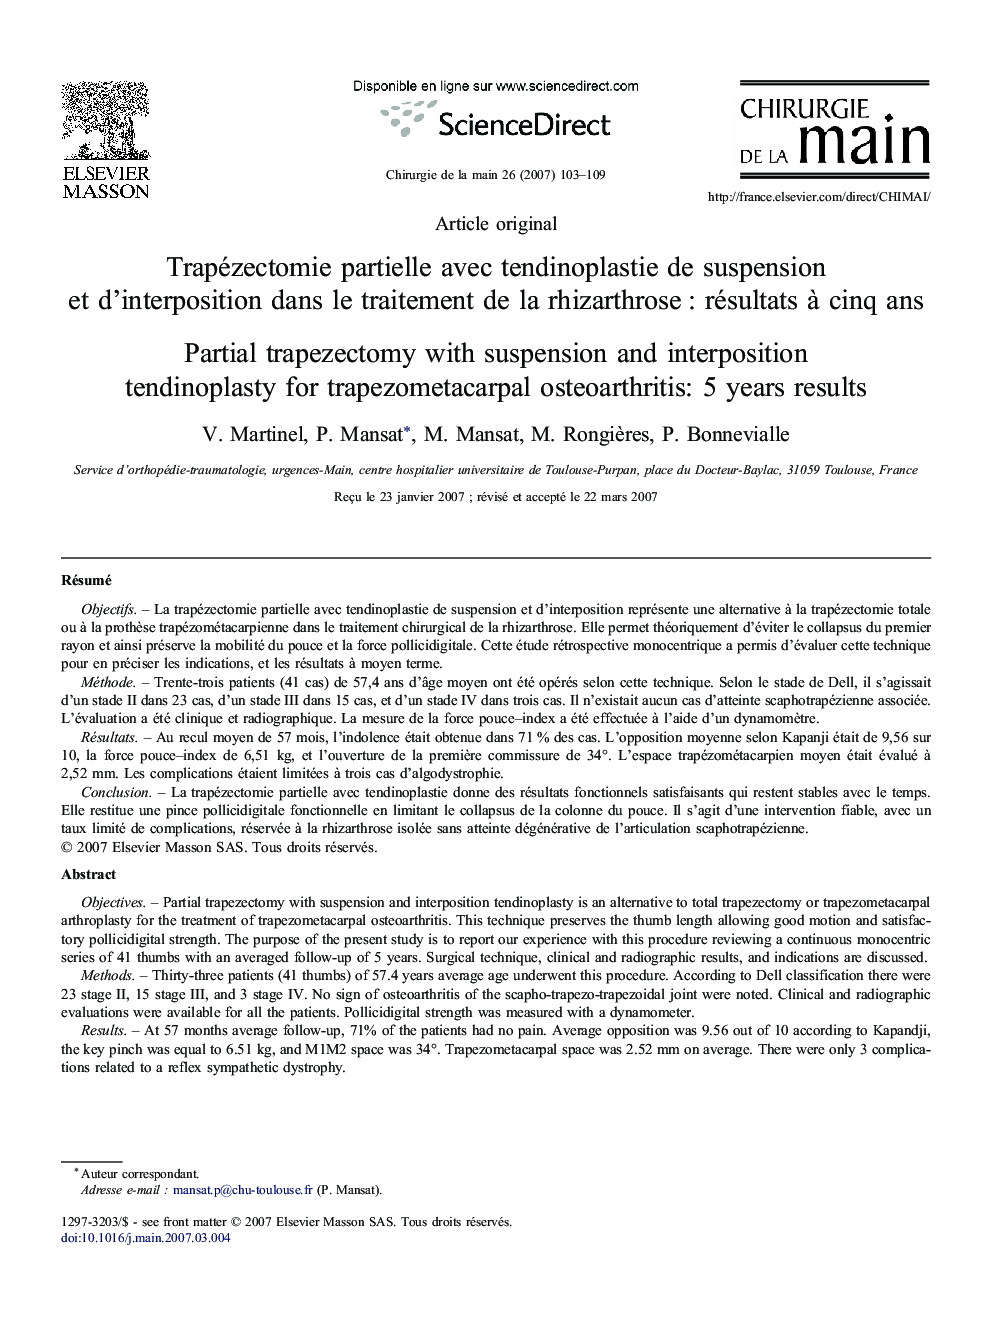 Trapézectomie partielle avec tendinoplastie de suspension et d'interposition dans le traitement de la rhizarthrose : résultats à cinq ans